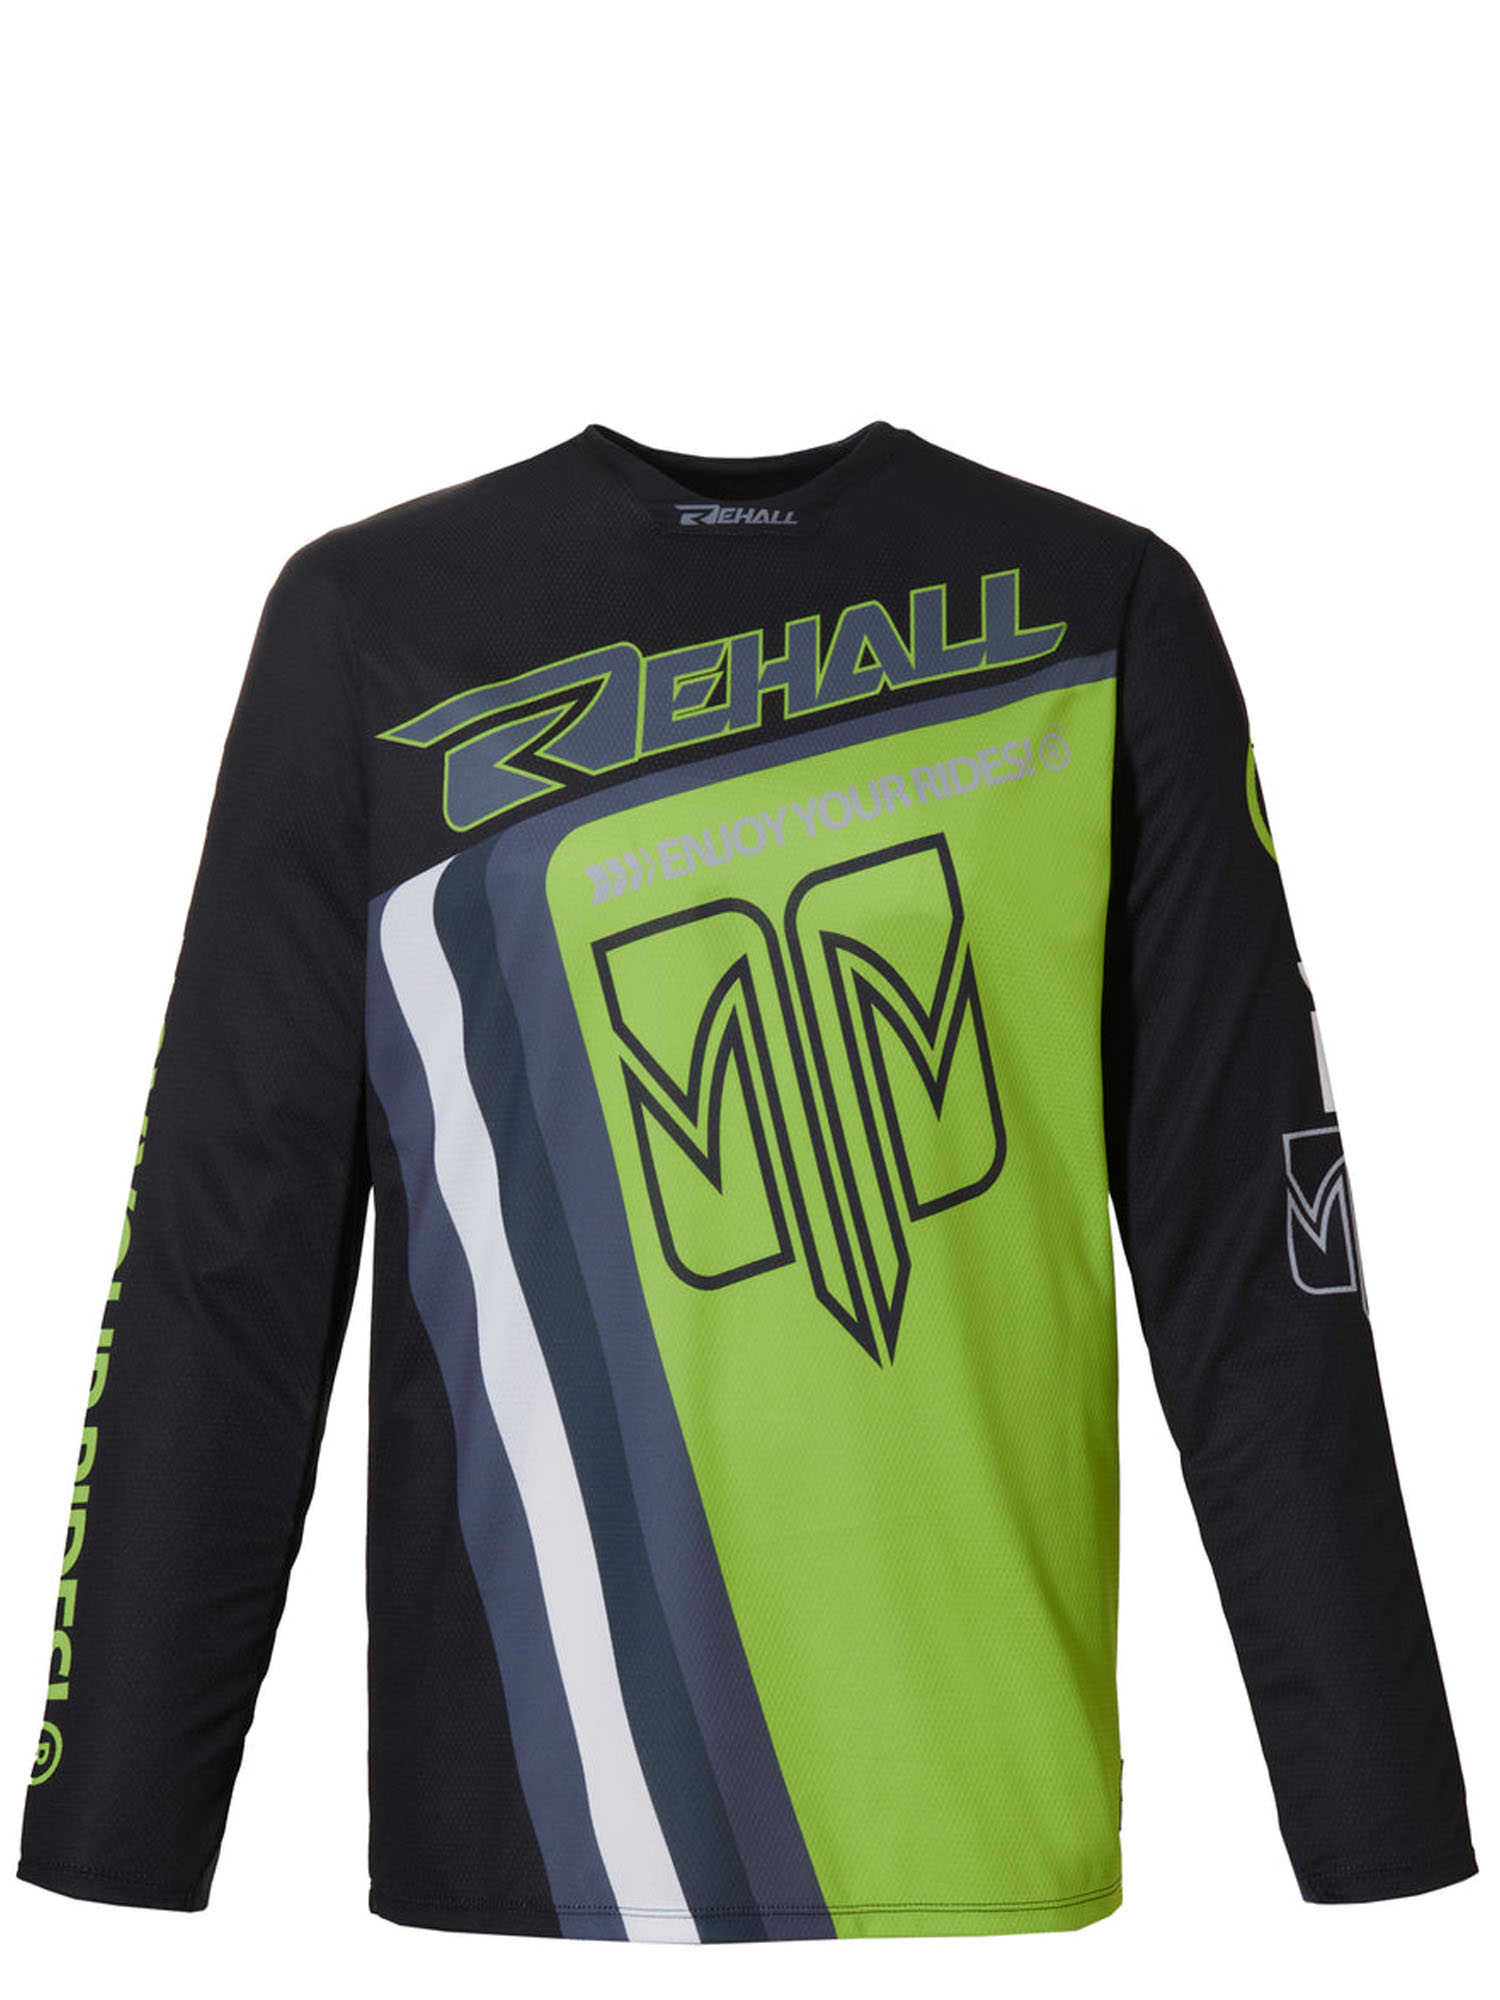 Велофутболка с длинным рукавом Rehall MIKE-R T-Shirt Long Sleeve Lime